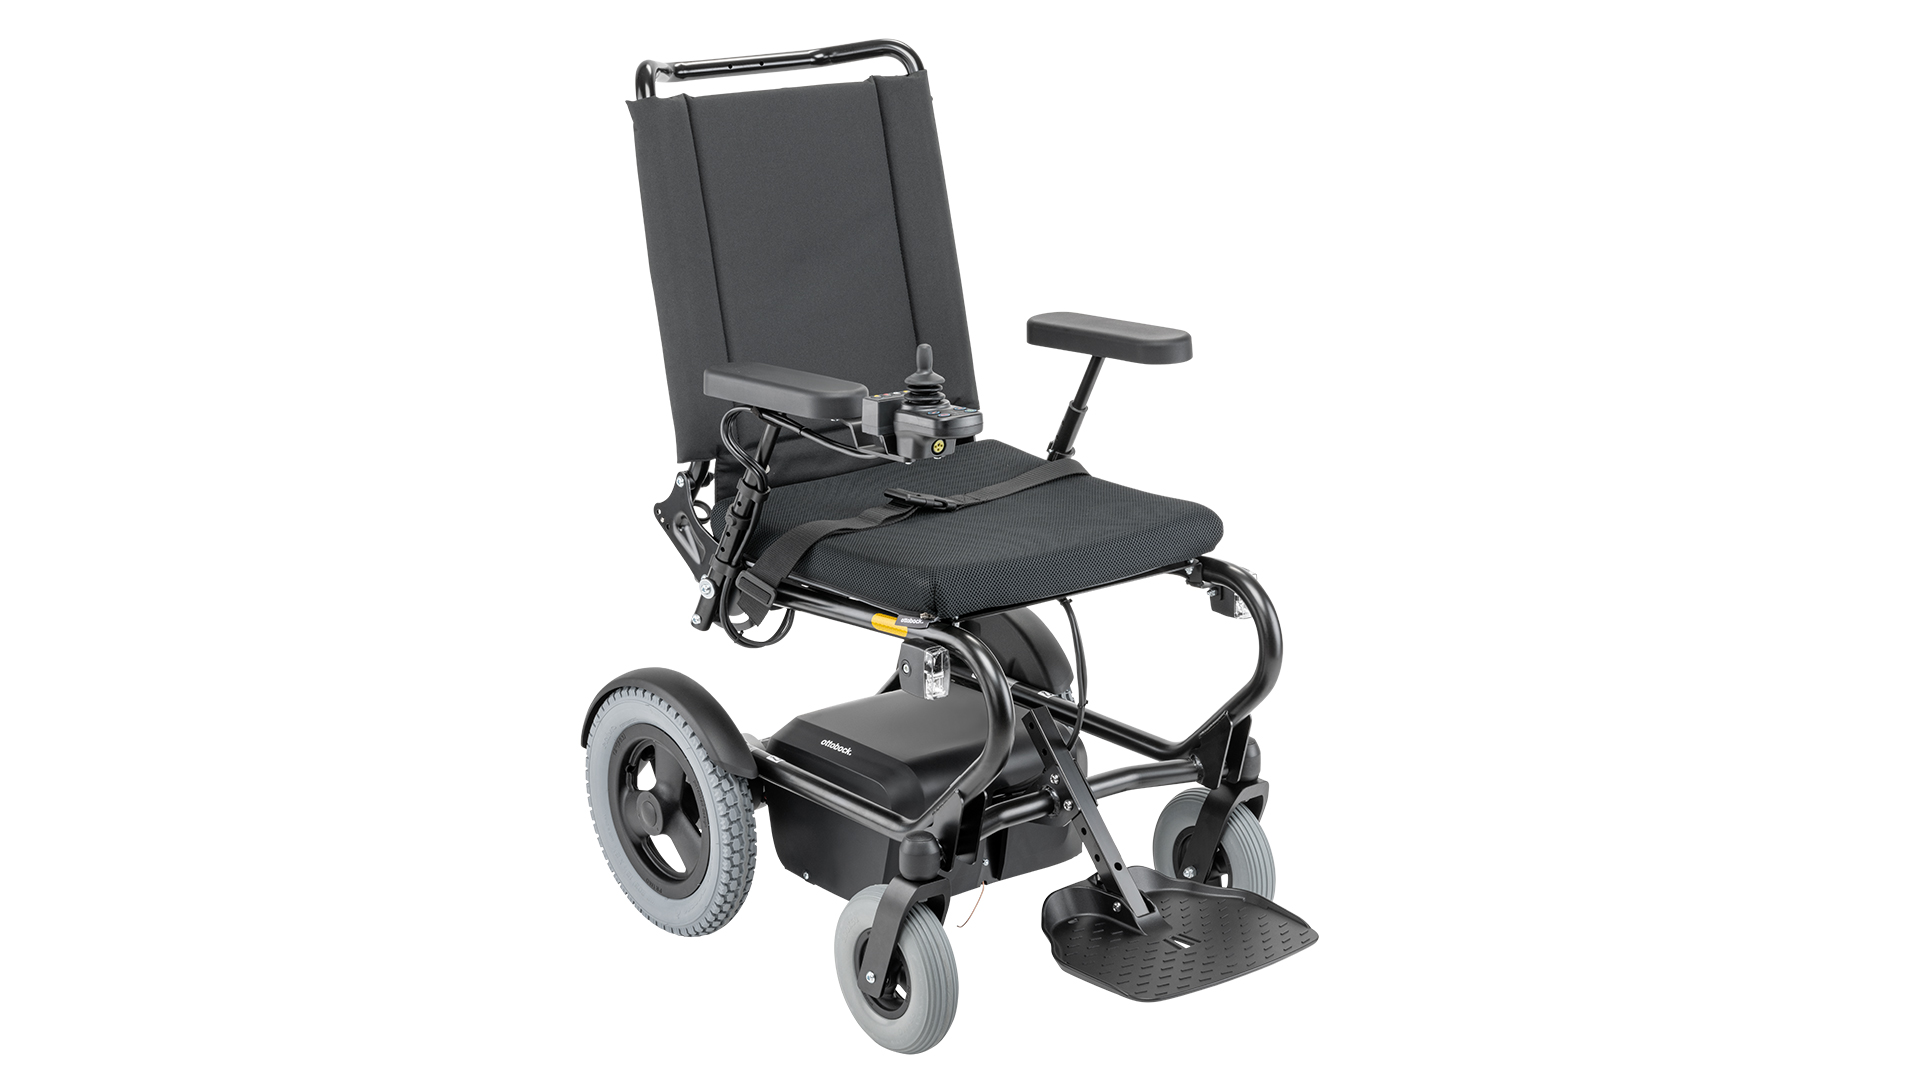 ドイツ製高級車椅子オットーボックM4